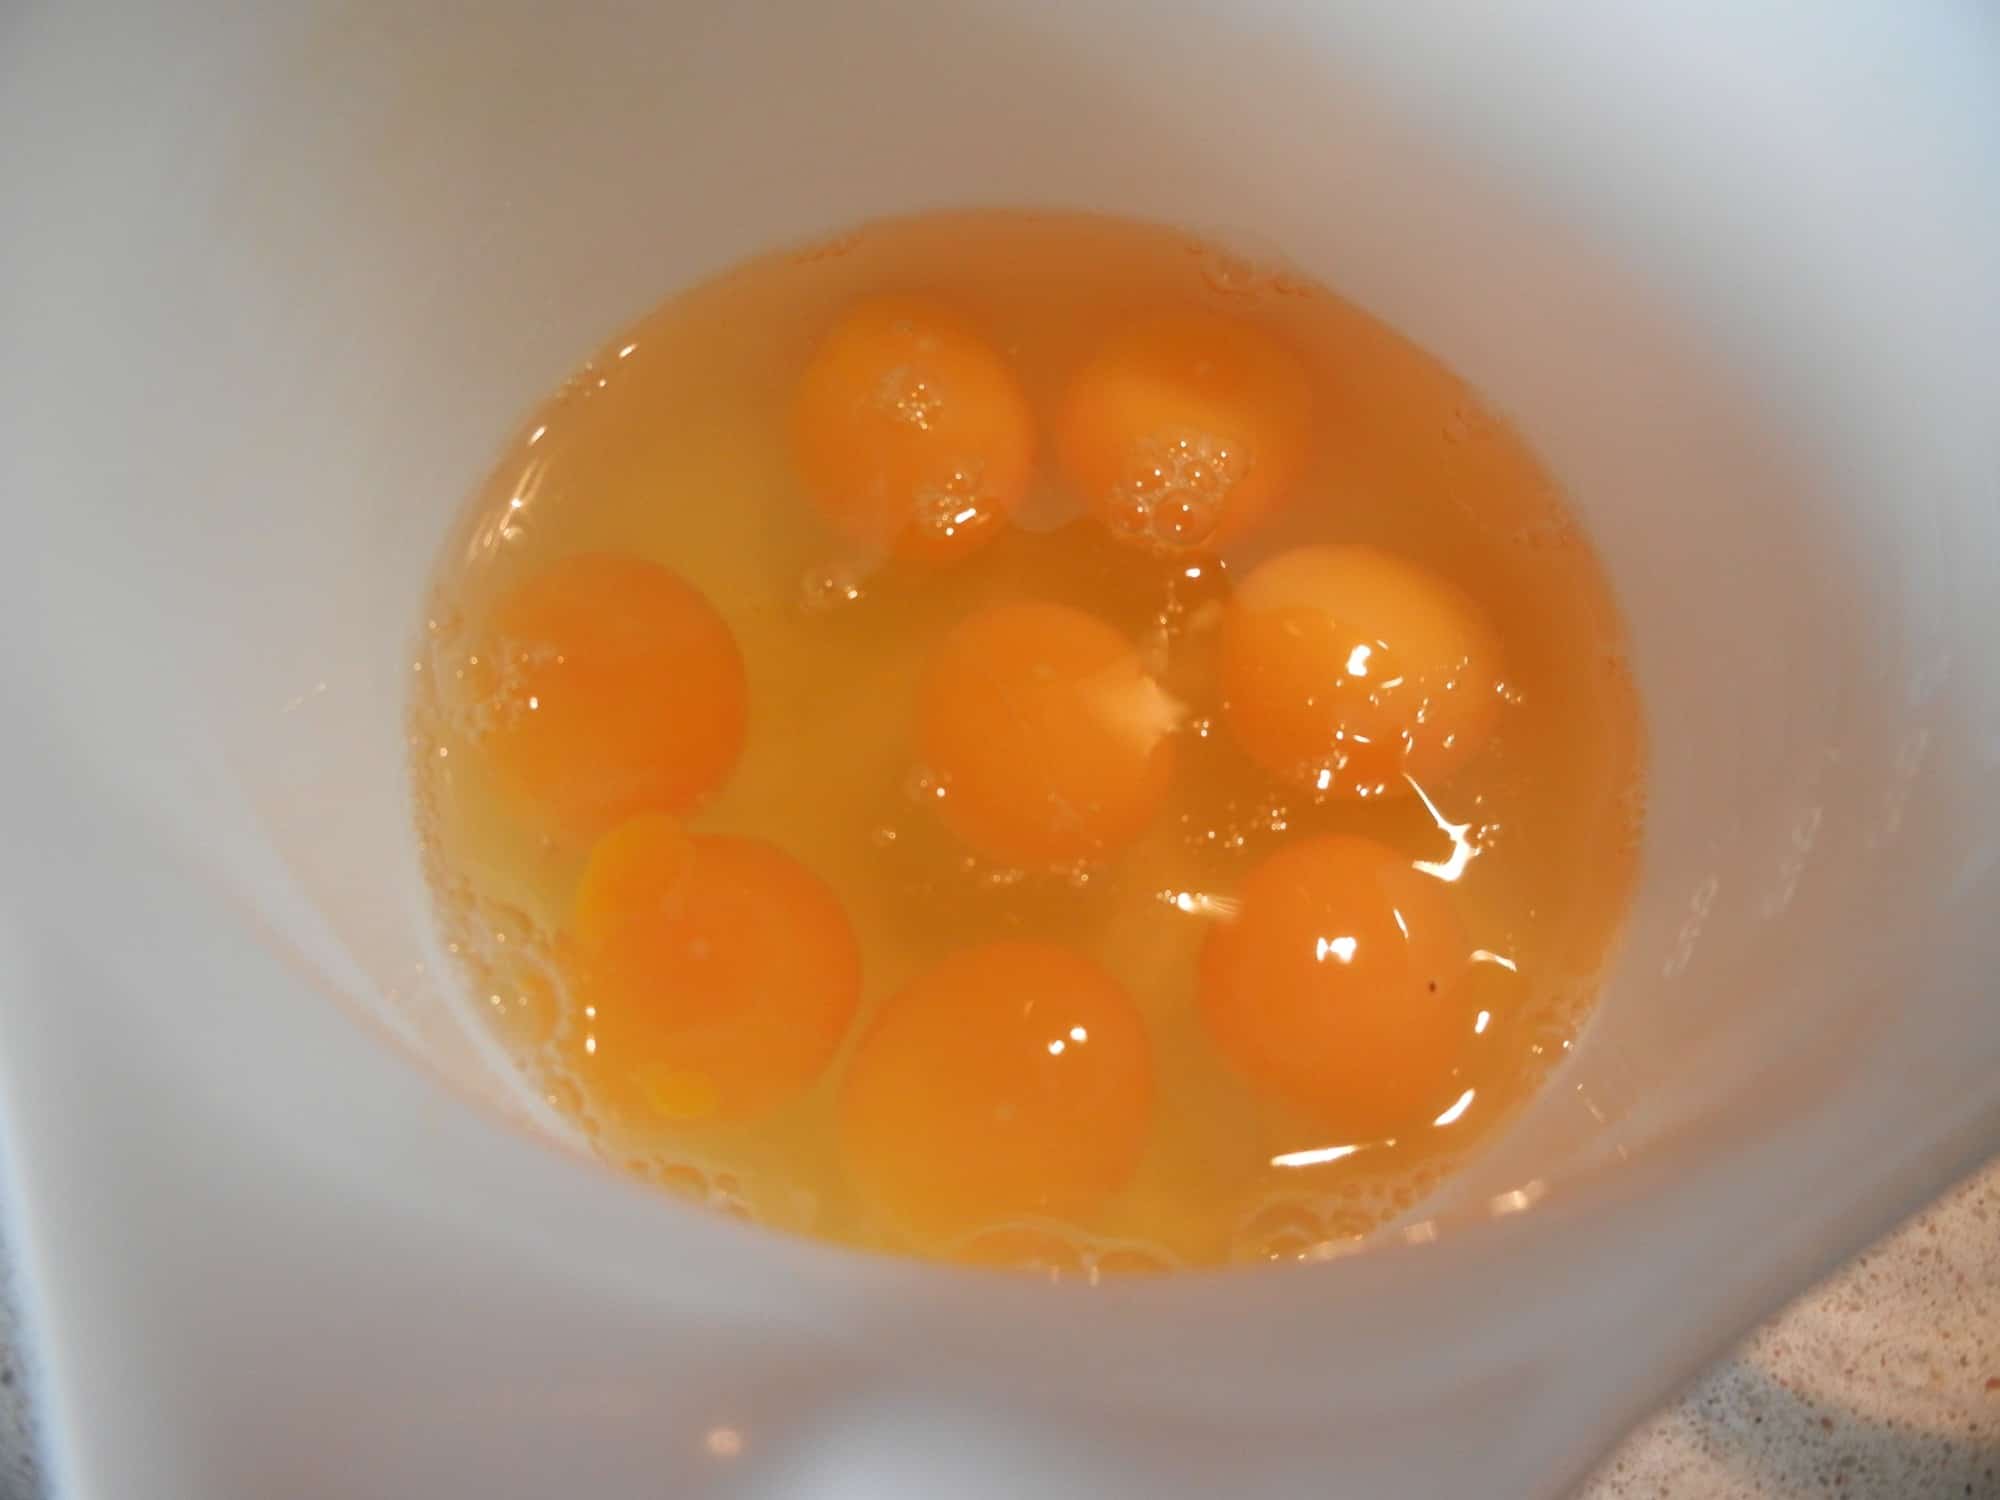 Pastured eggs